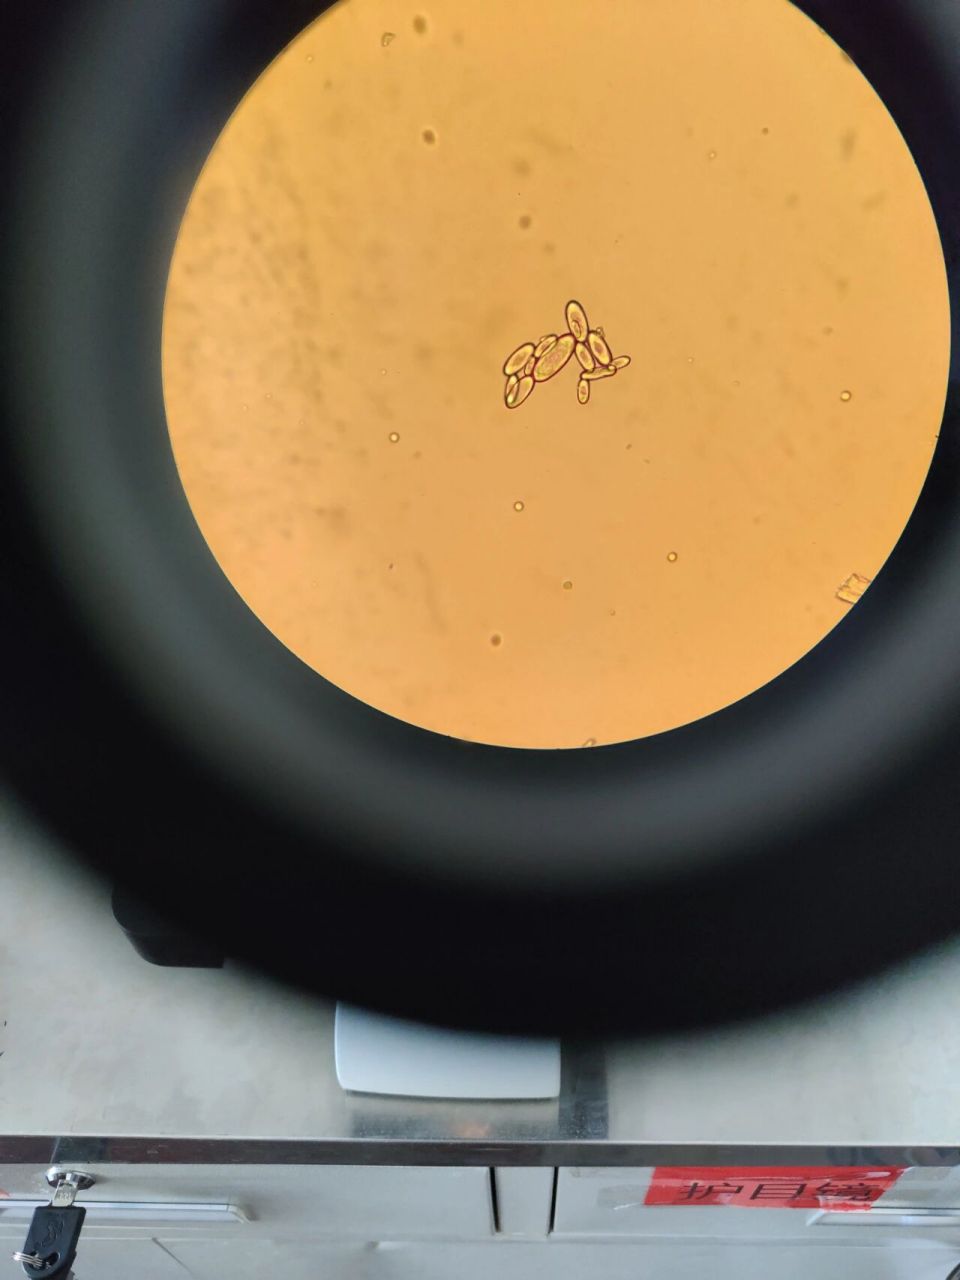 草酸钙簇晶显微图片图片